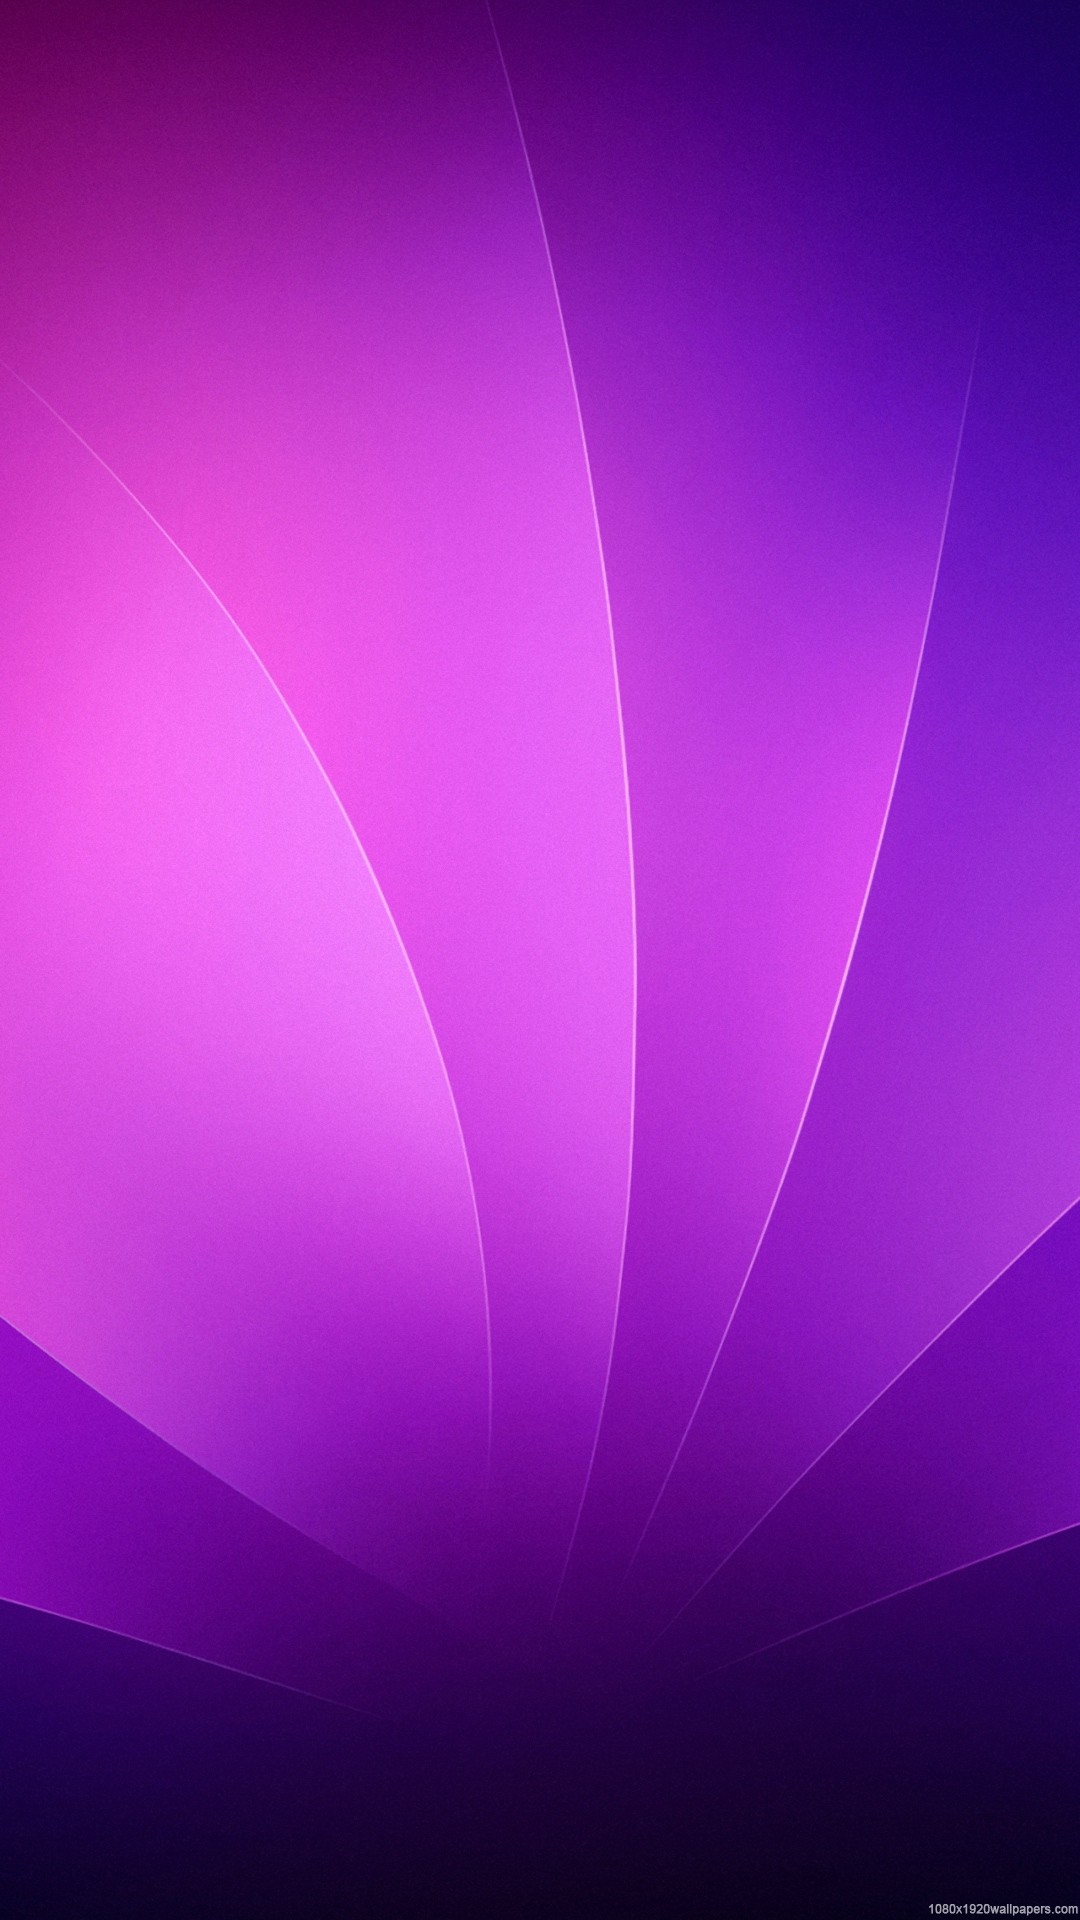 1080x1920 1080Ã1920-leaves-line-abstract-purple-HD-1080P-abstract-wallpaper-wp400721